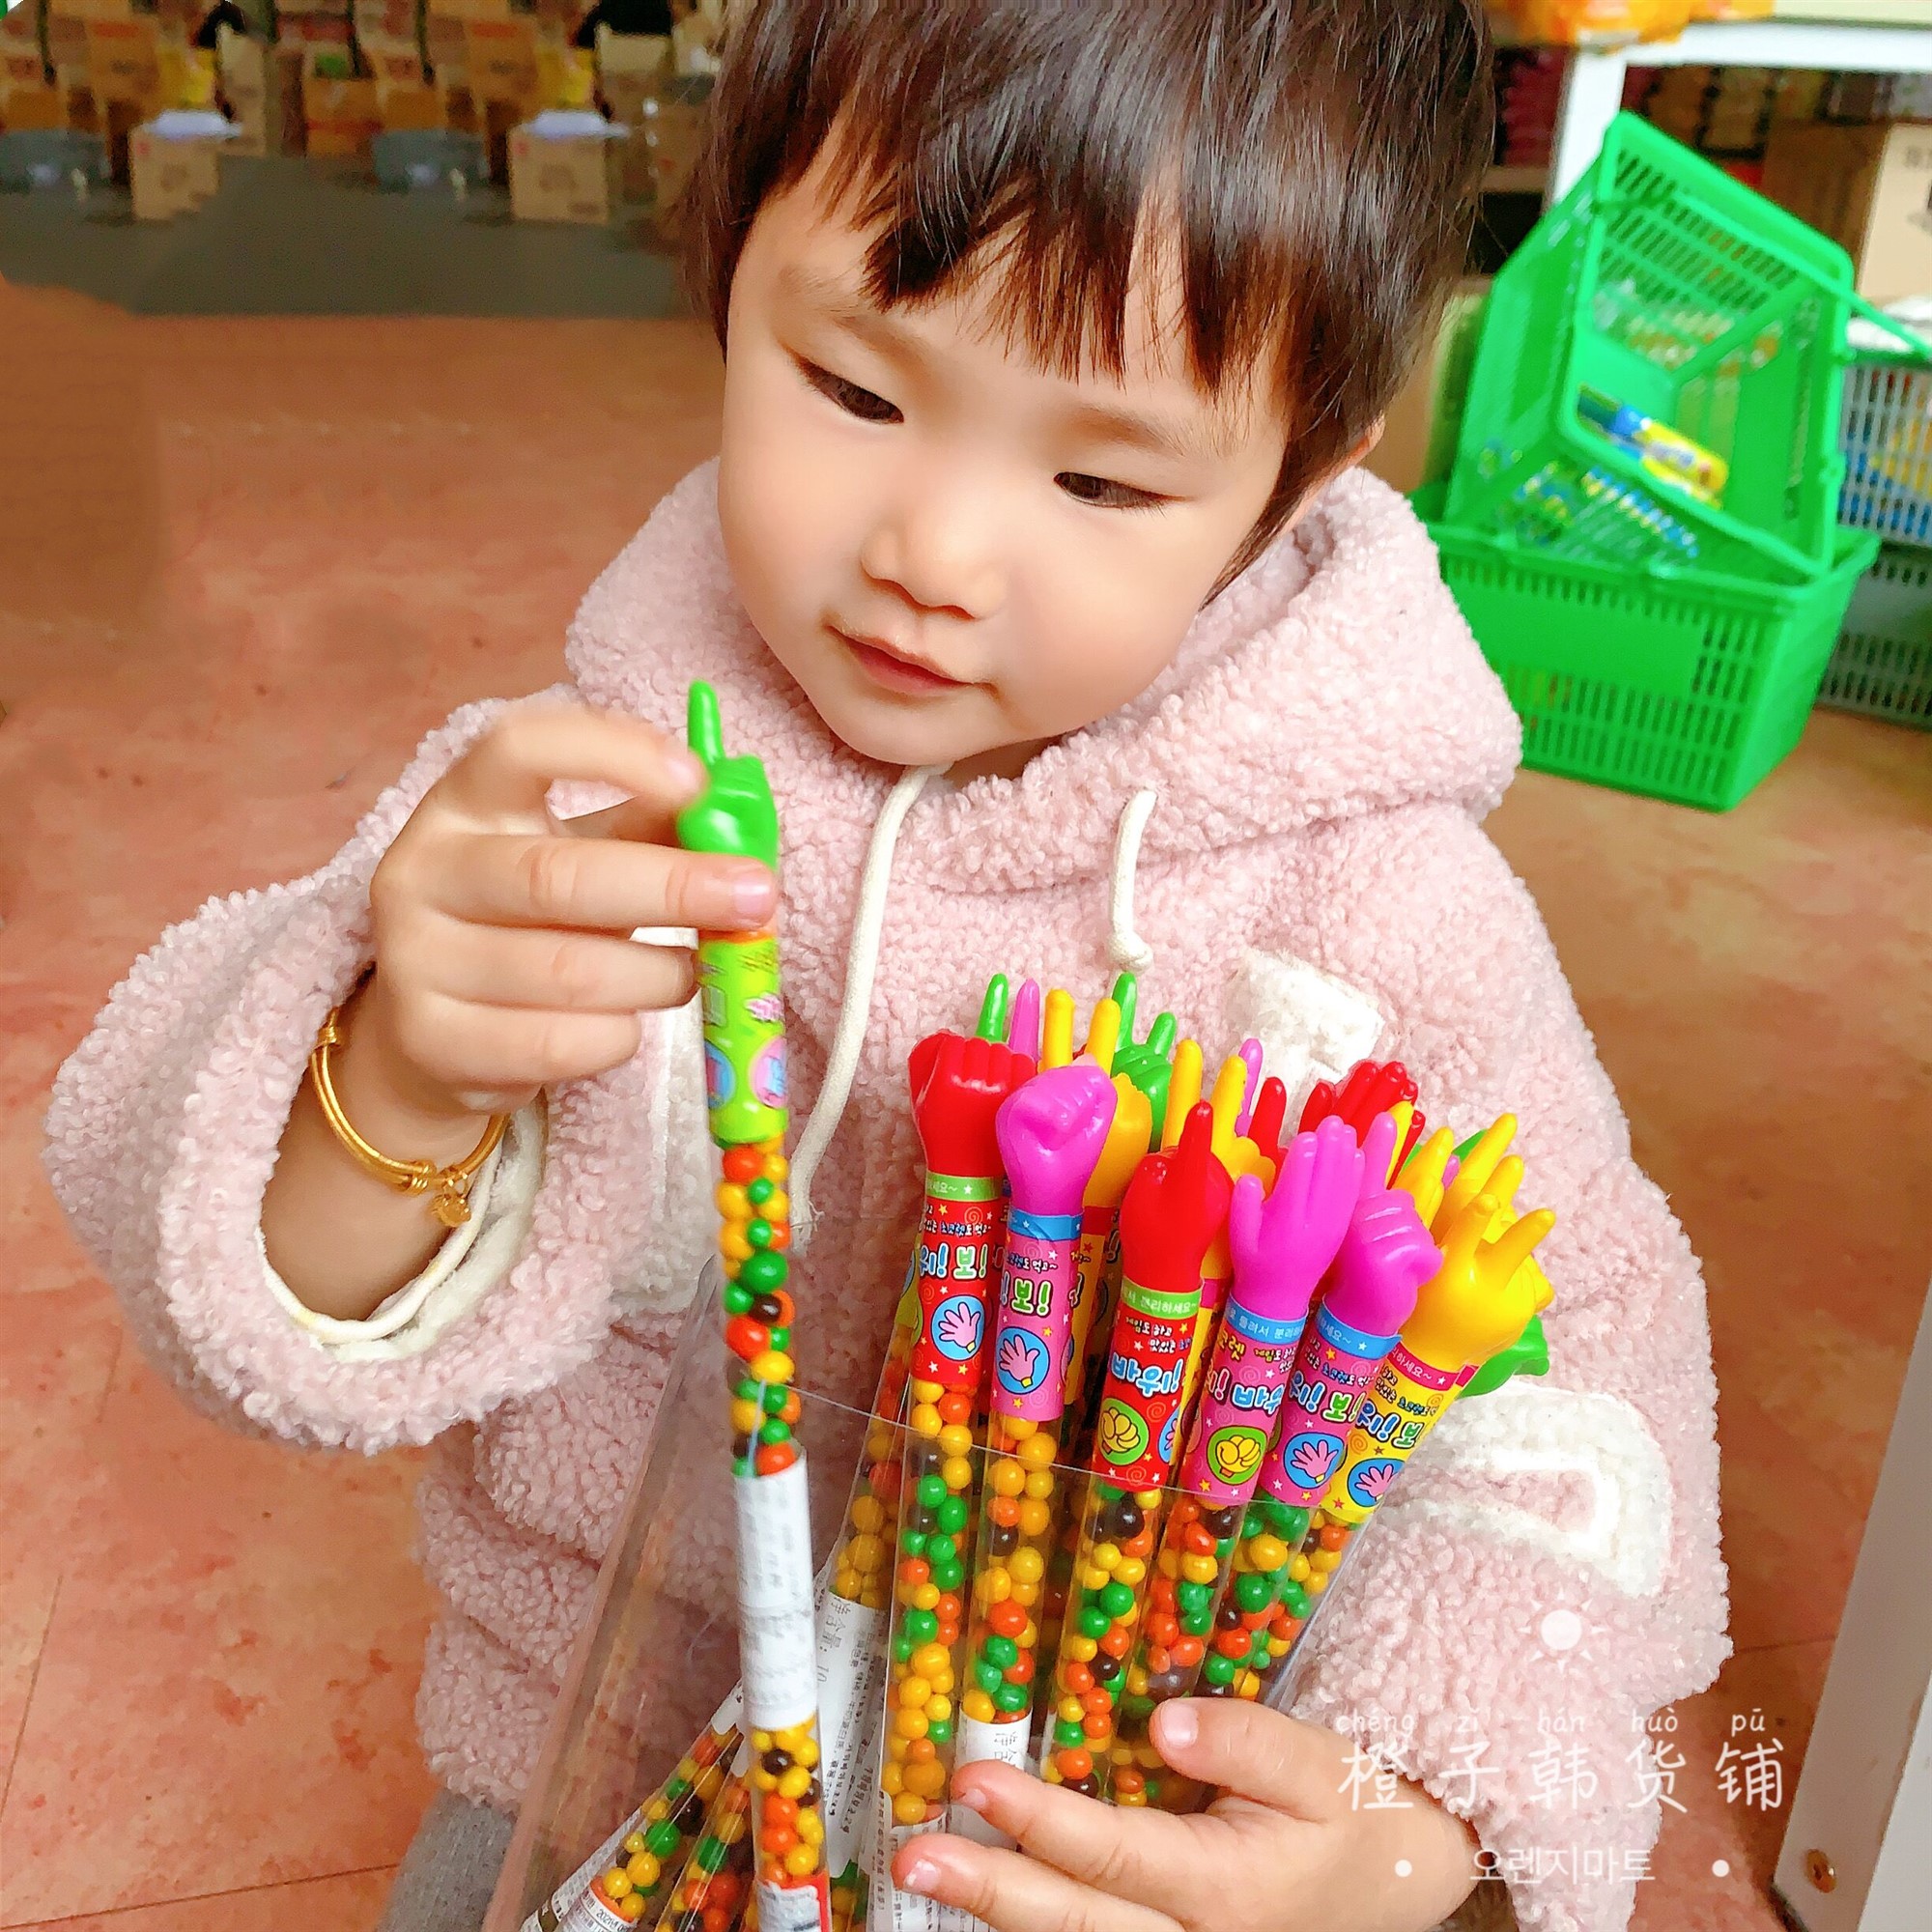 韩国进口包袱剪子锤石头剪刀布巧克力豆好玩玩具糖果儿童零食品